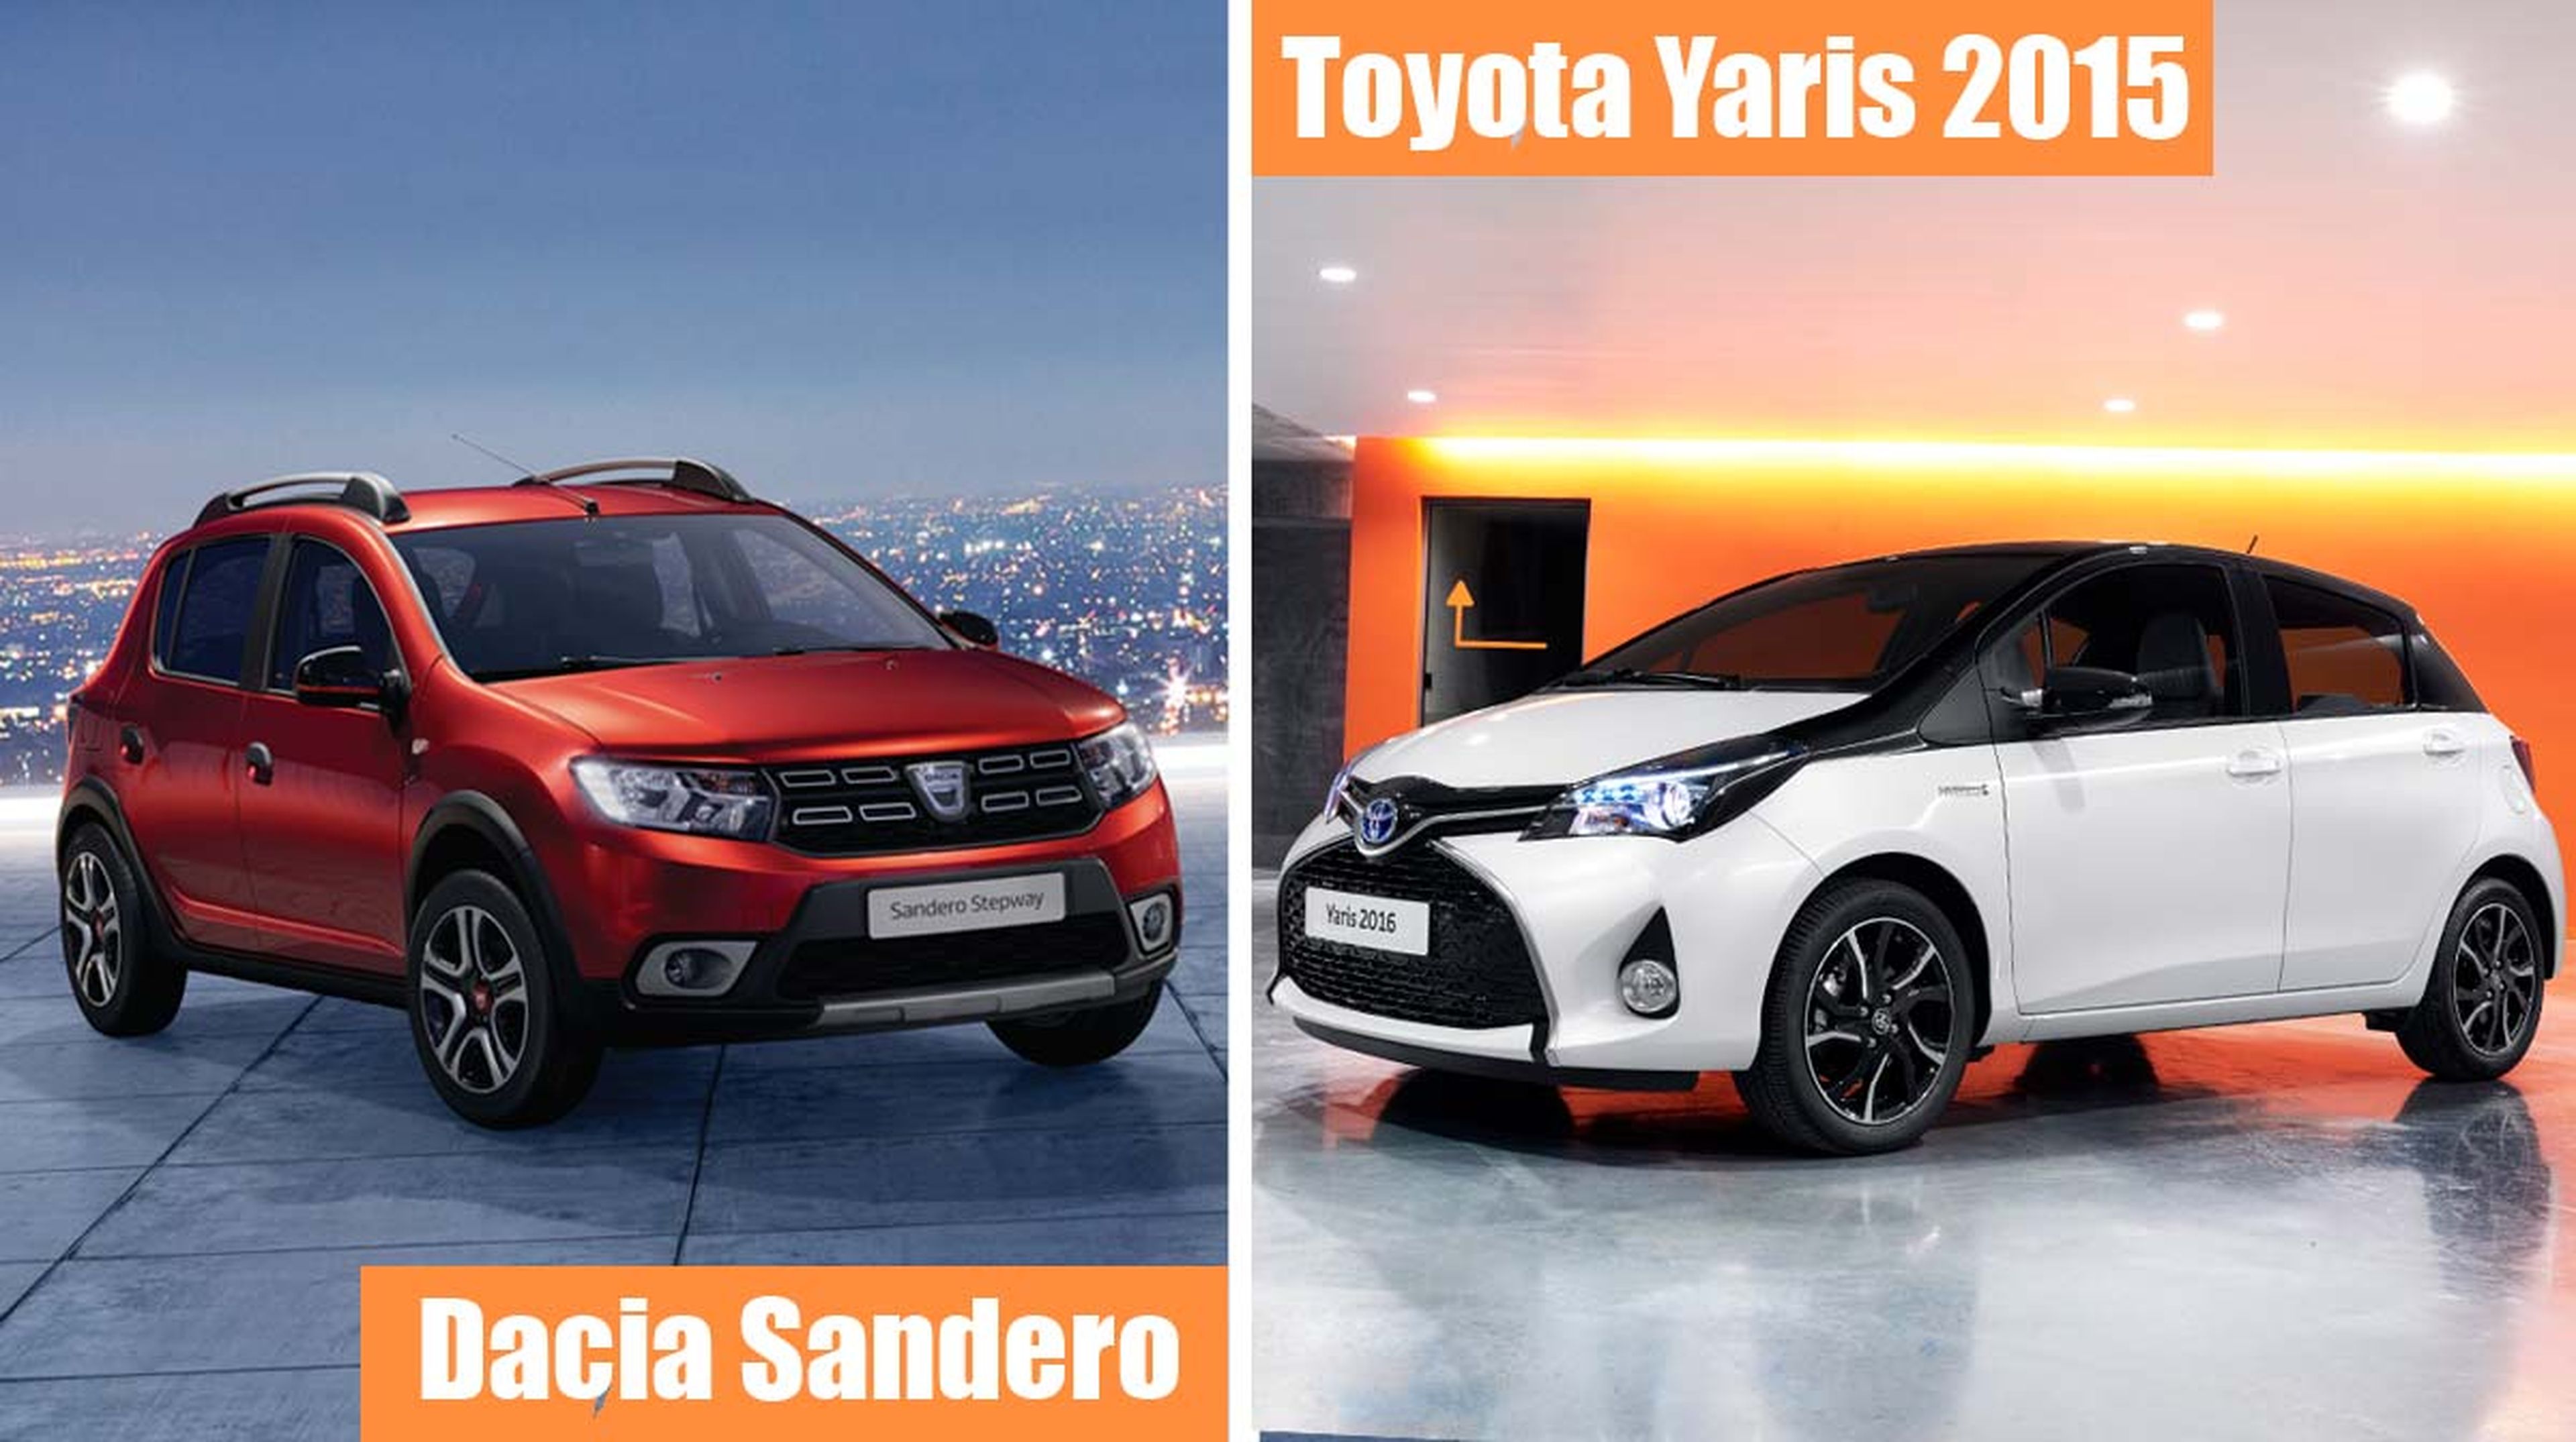 ¿Dacia Sandero o Toyota Yaris usado?